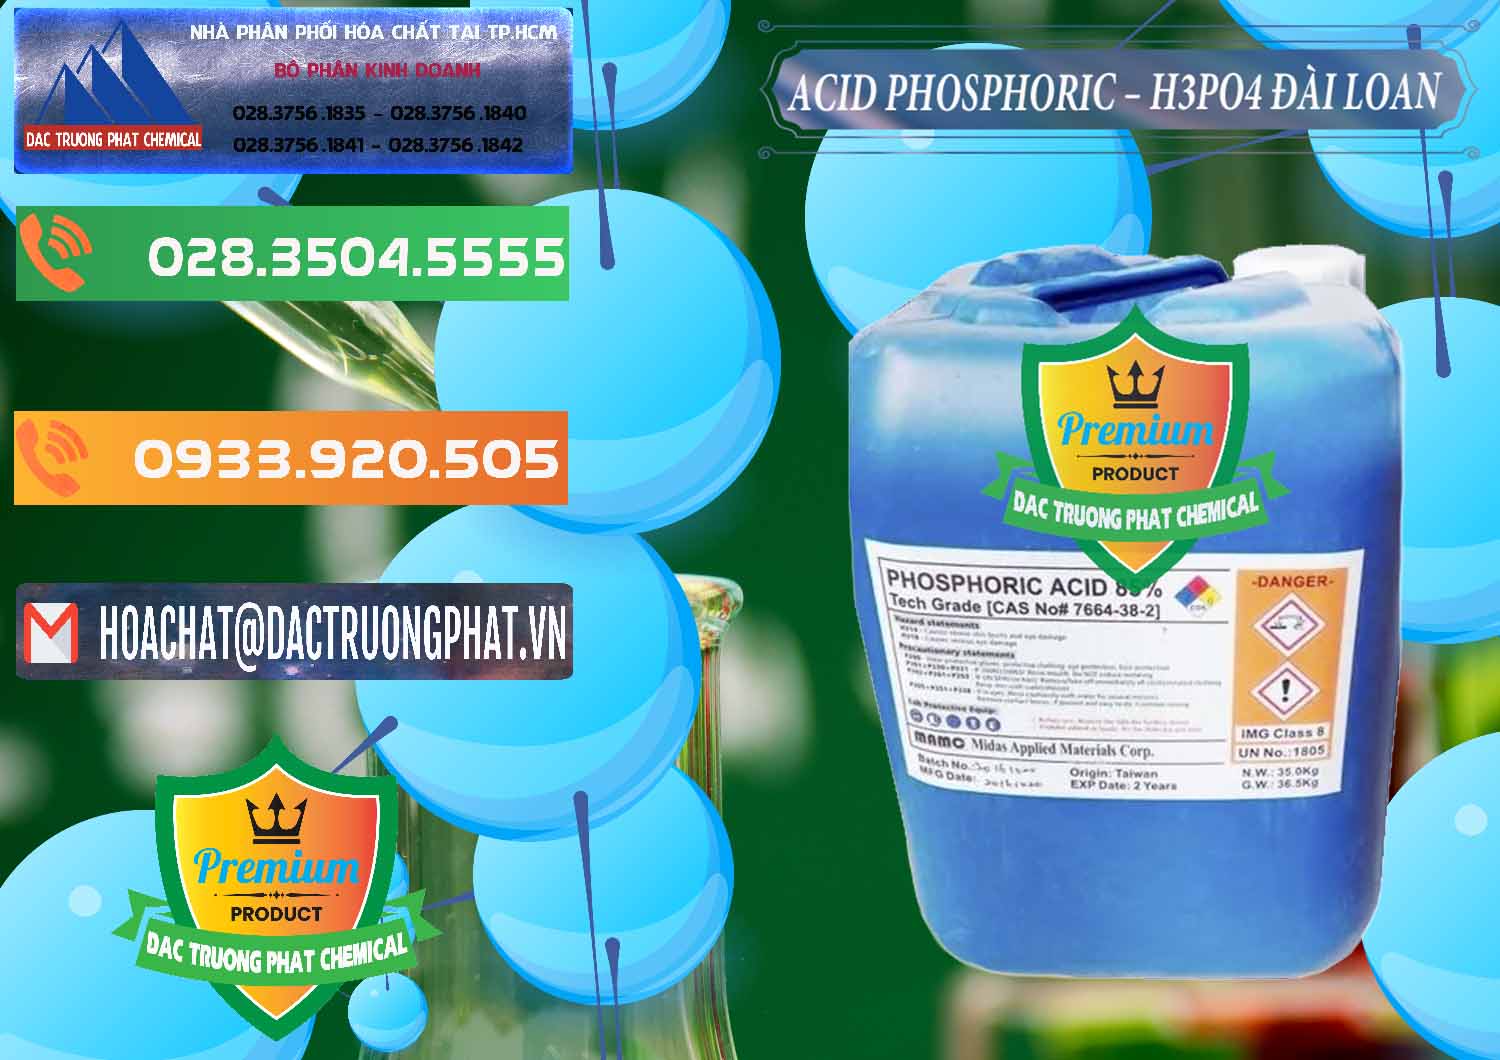 Chuyên bán & phân phối Axit Phosphoric - Acid Phosphoric H3PO4 85% Đài Loan Taiwan - 0351 - Cty cung cấp - nhập khẩu hóa chất tại TP.HCM - hoachatxulynuoc.com.vn